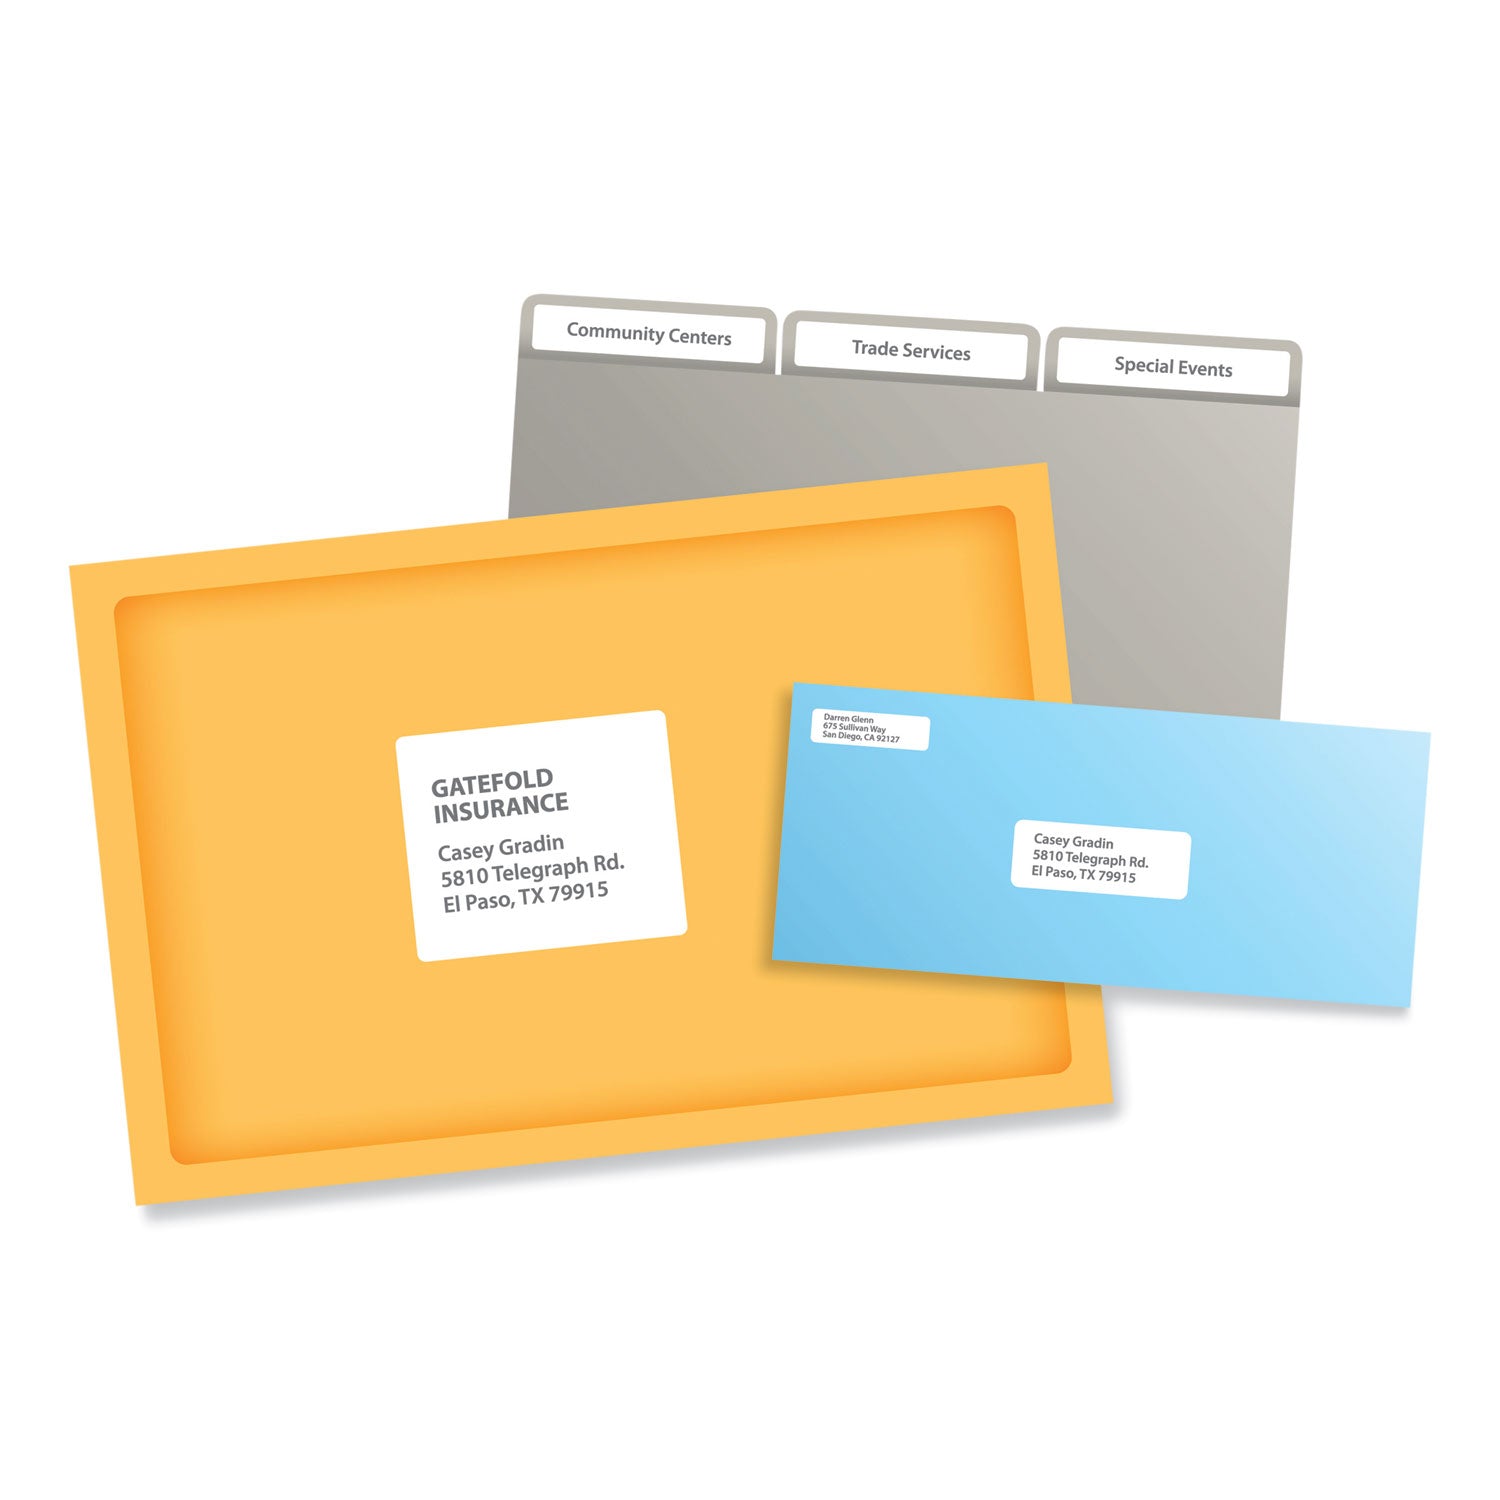 Labels, Laser Printers, 1 x 2.63, White, 30/Sheet, 250 Sheets/Box - 